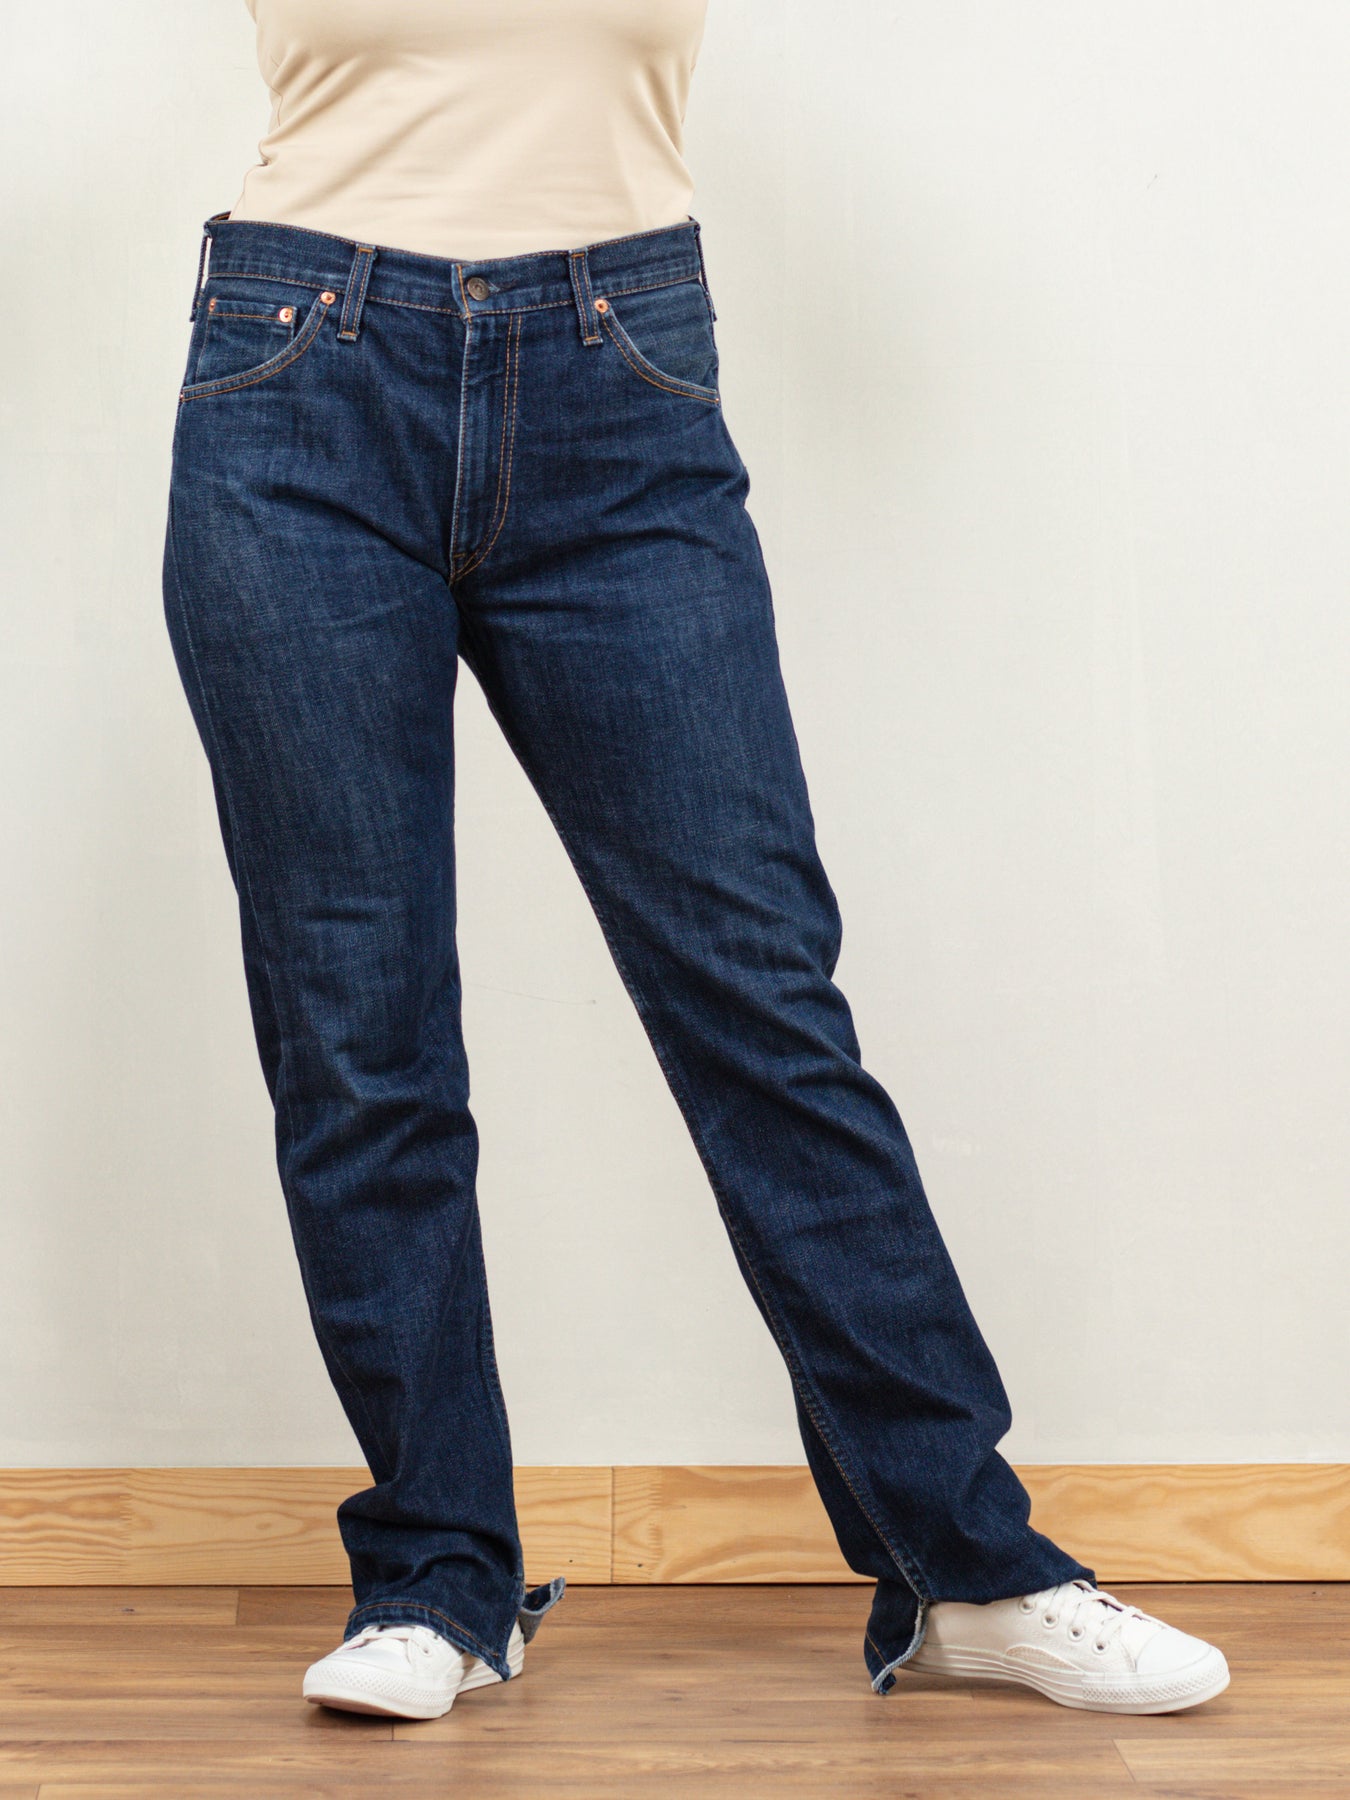 Online Vintage Store, 90's Women LEVI'S 505 Jeans